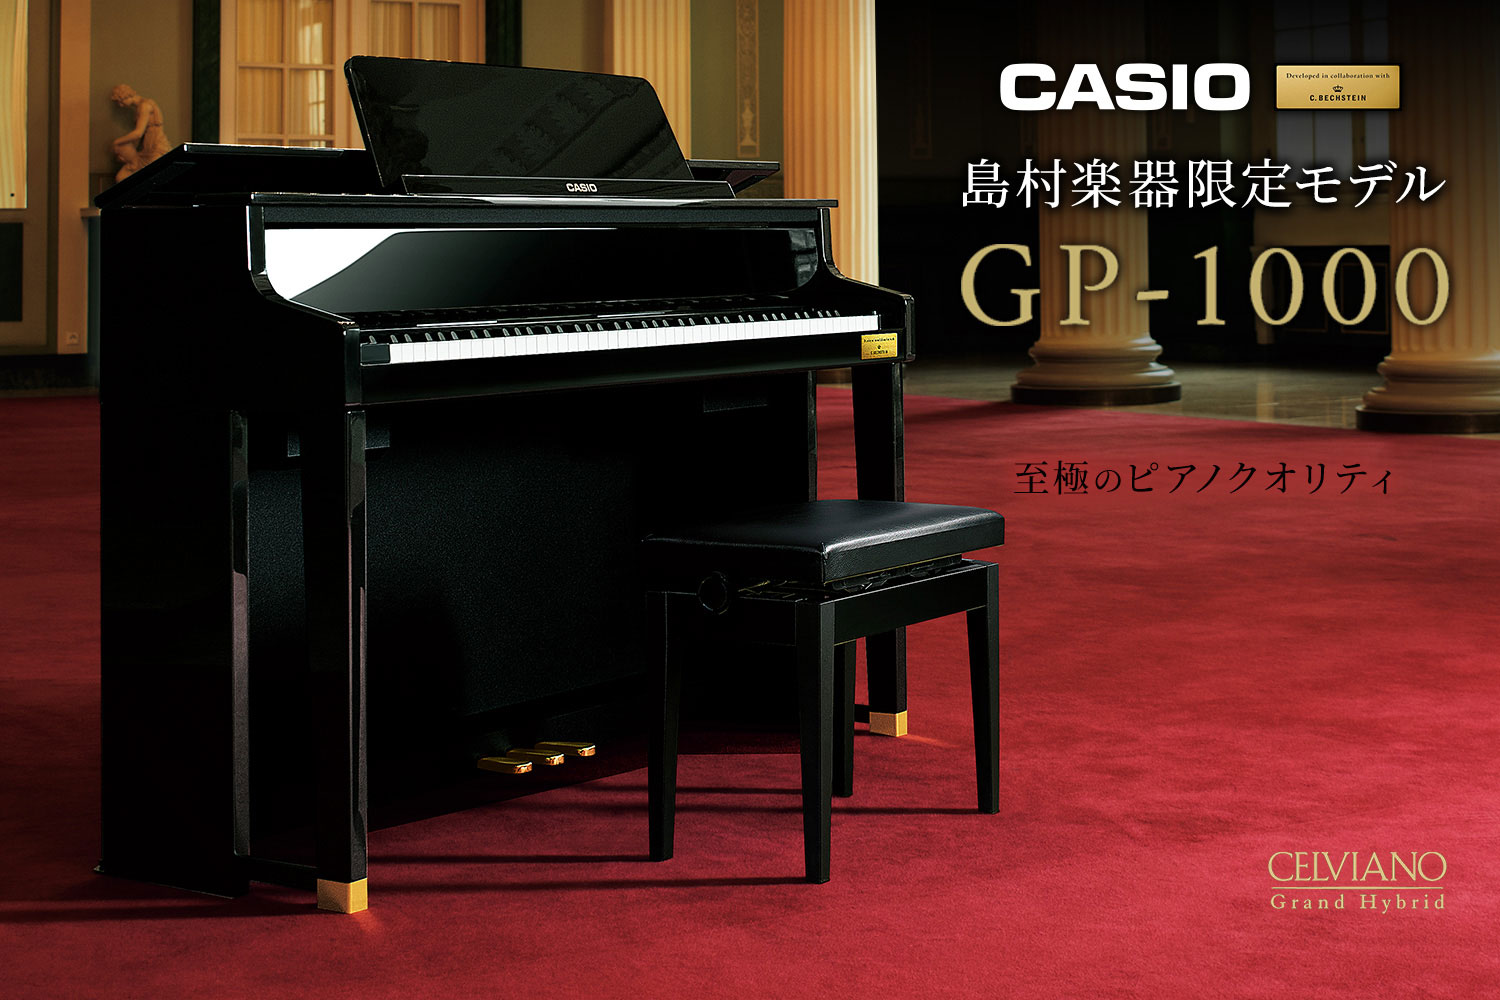 【商品情報】CASIO×C.ベヒシュタイン コラボレーション電子ピアノに島村楽器限定モデル「GP-1000」が新登場！